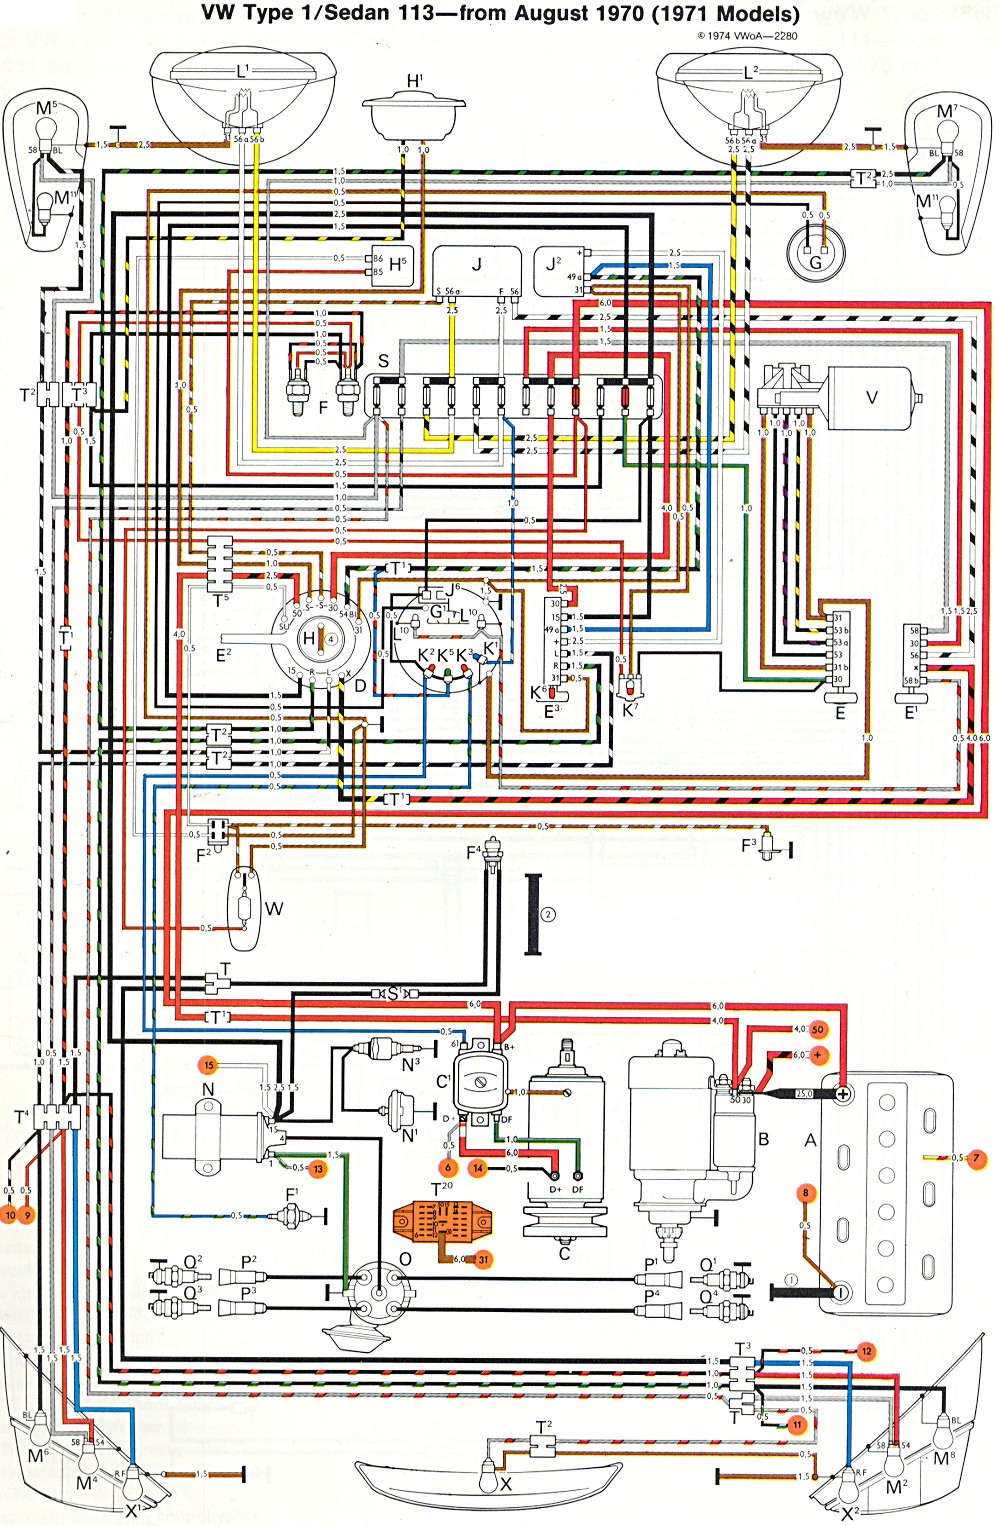 2012 mk6 jetta voltage wiring diagram